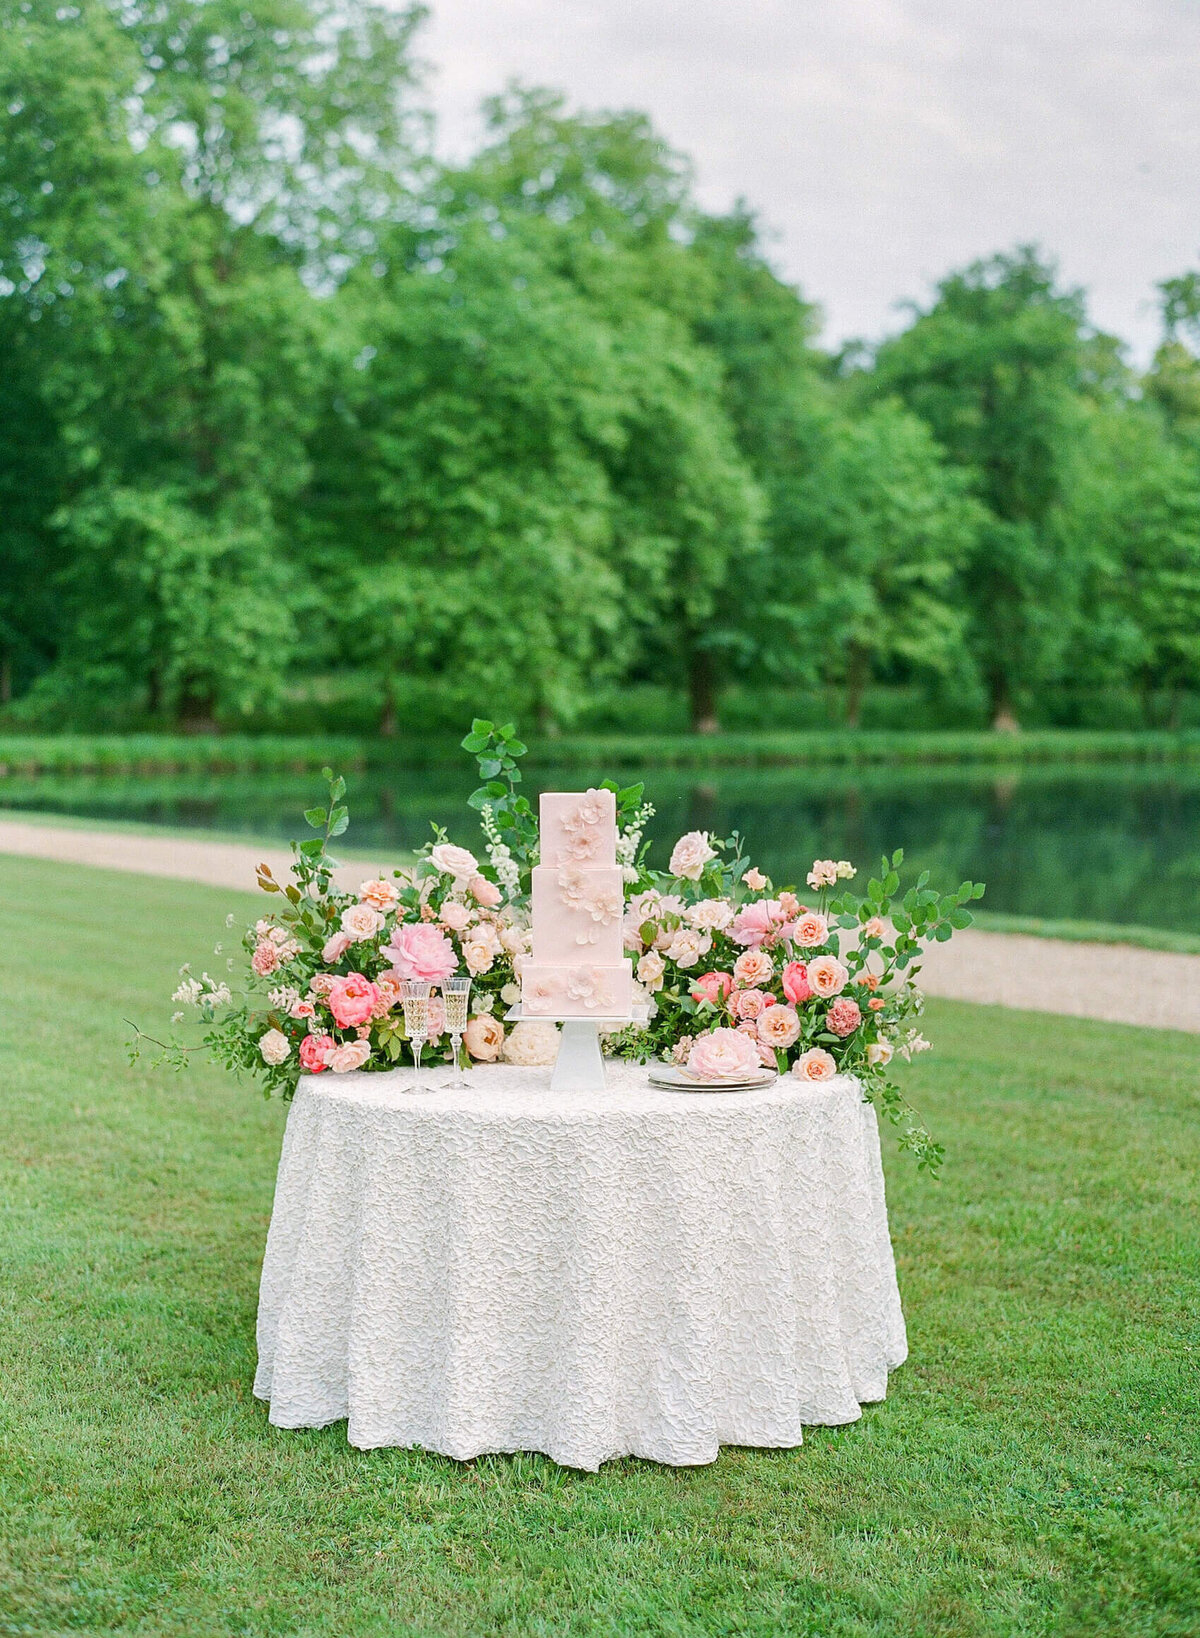 Chateau-de-Villette-wedding-florist-Floraison44